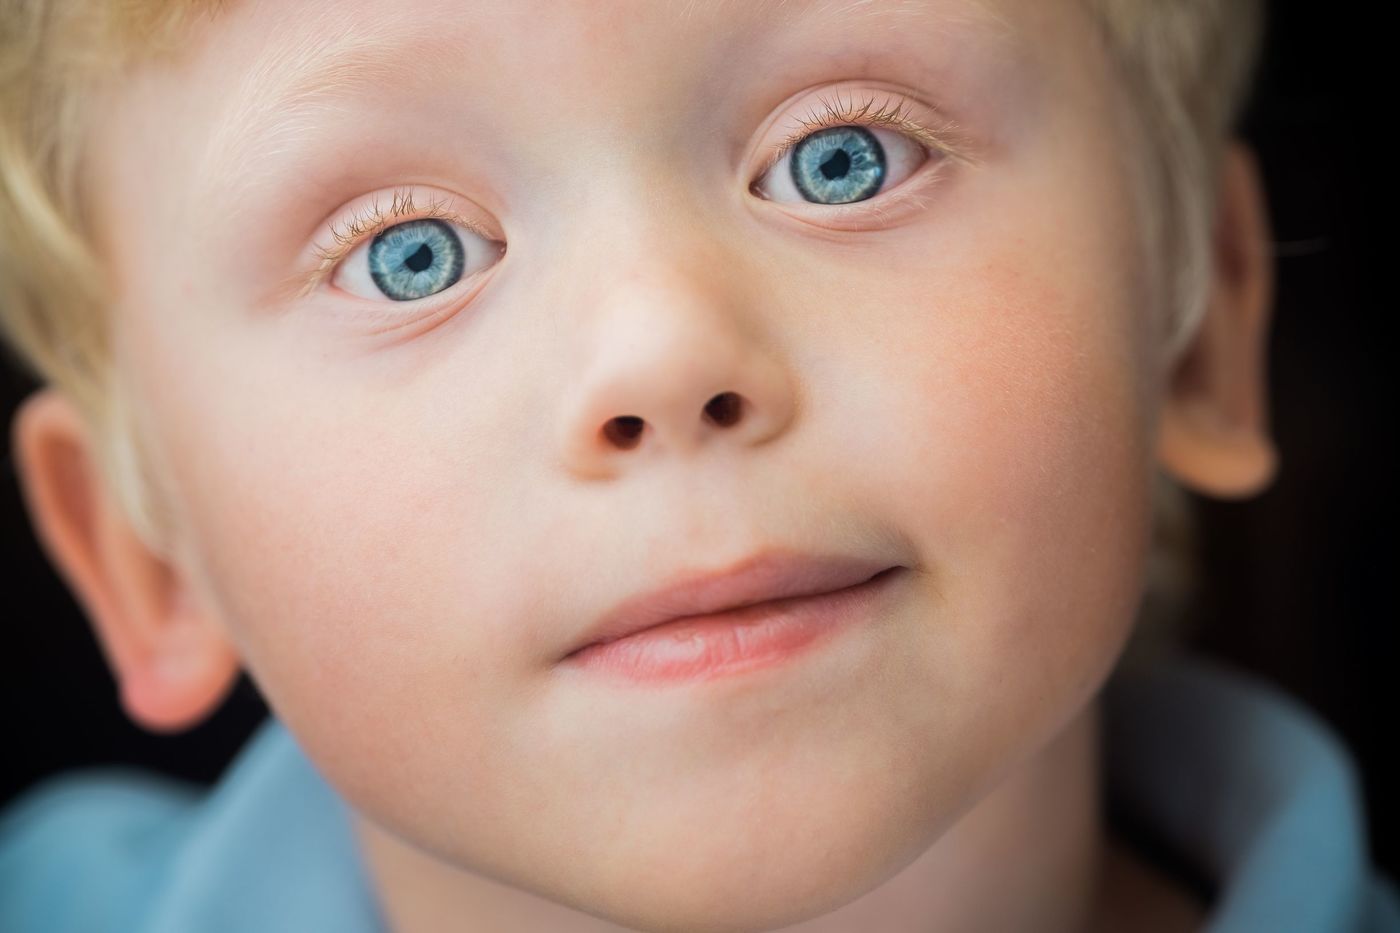 Голубоглазый самый. Гетерохромия радужной оболочки. Детские глаза. Дети с голубыми глазами. Дети с разным цветом глаз.